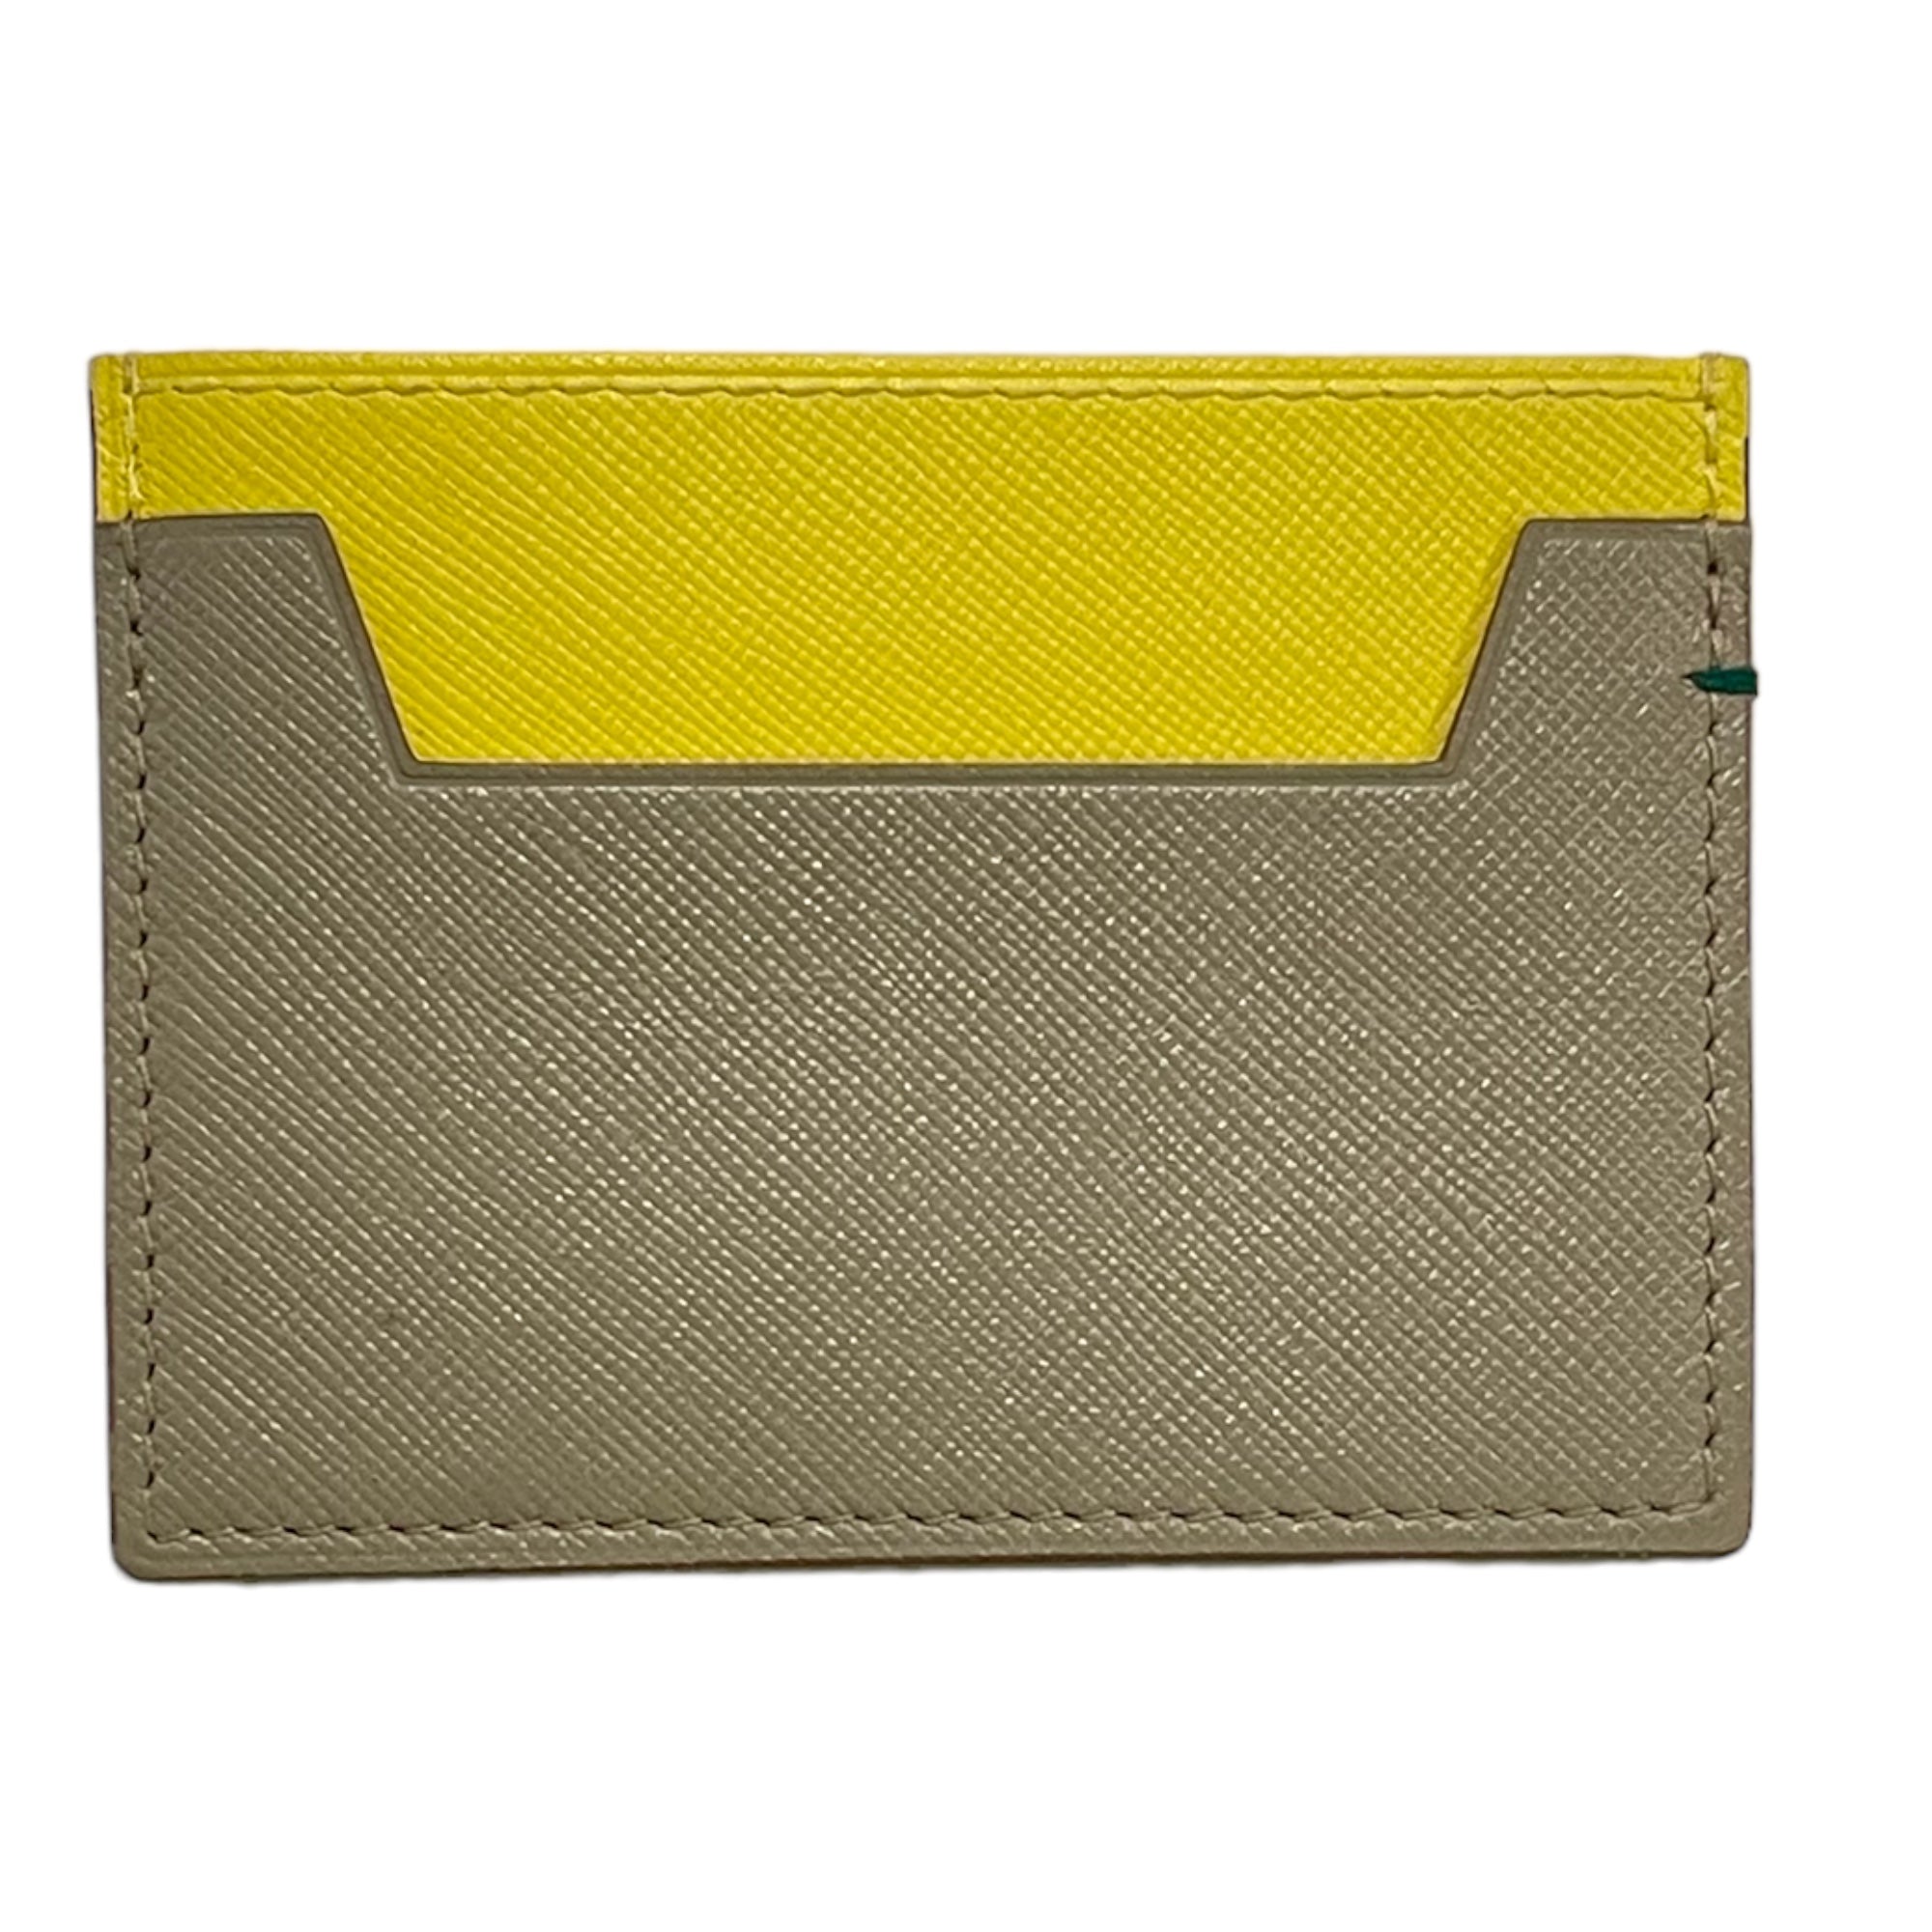 ROLEX Men's Leather Card Holder Wallet